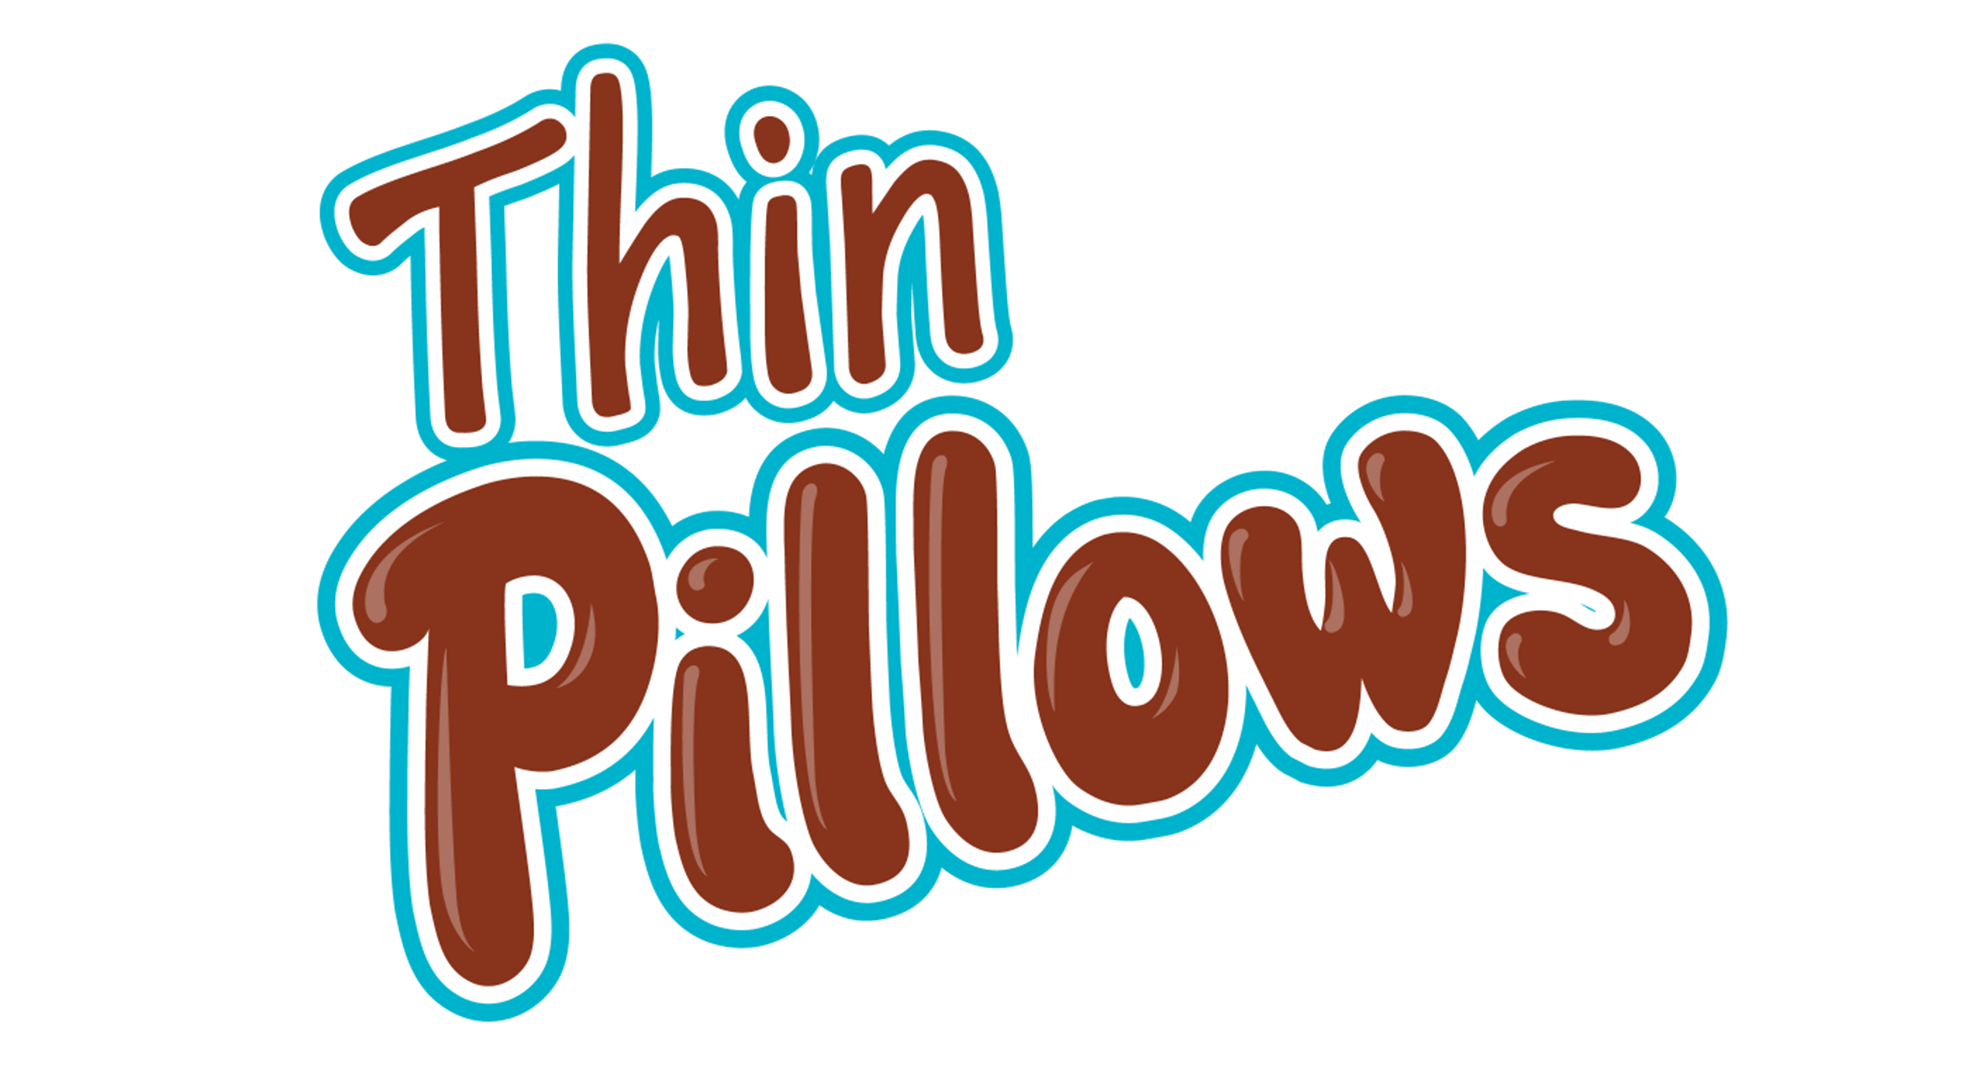 Thin Pillows